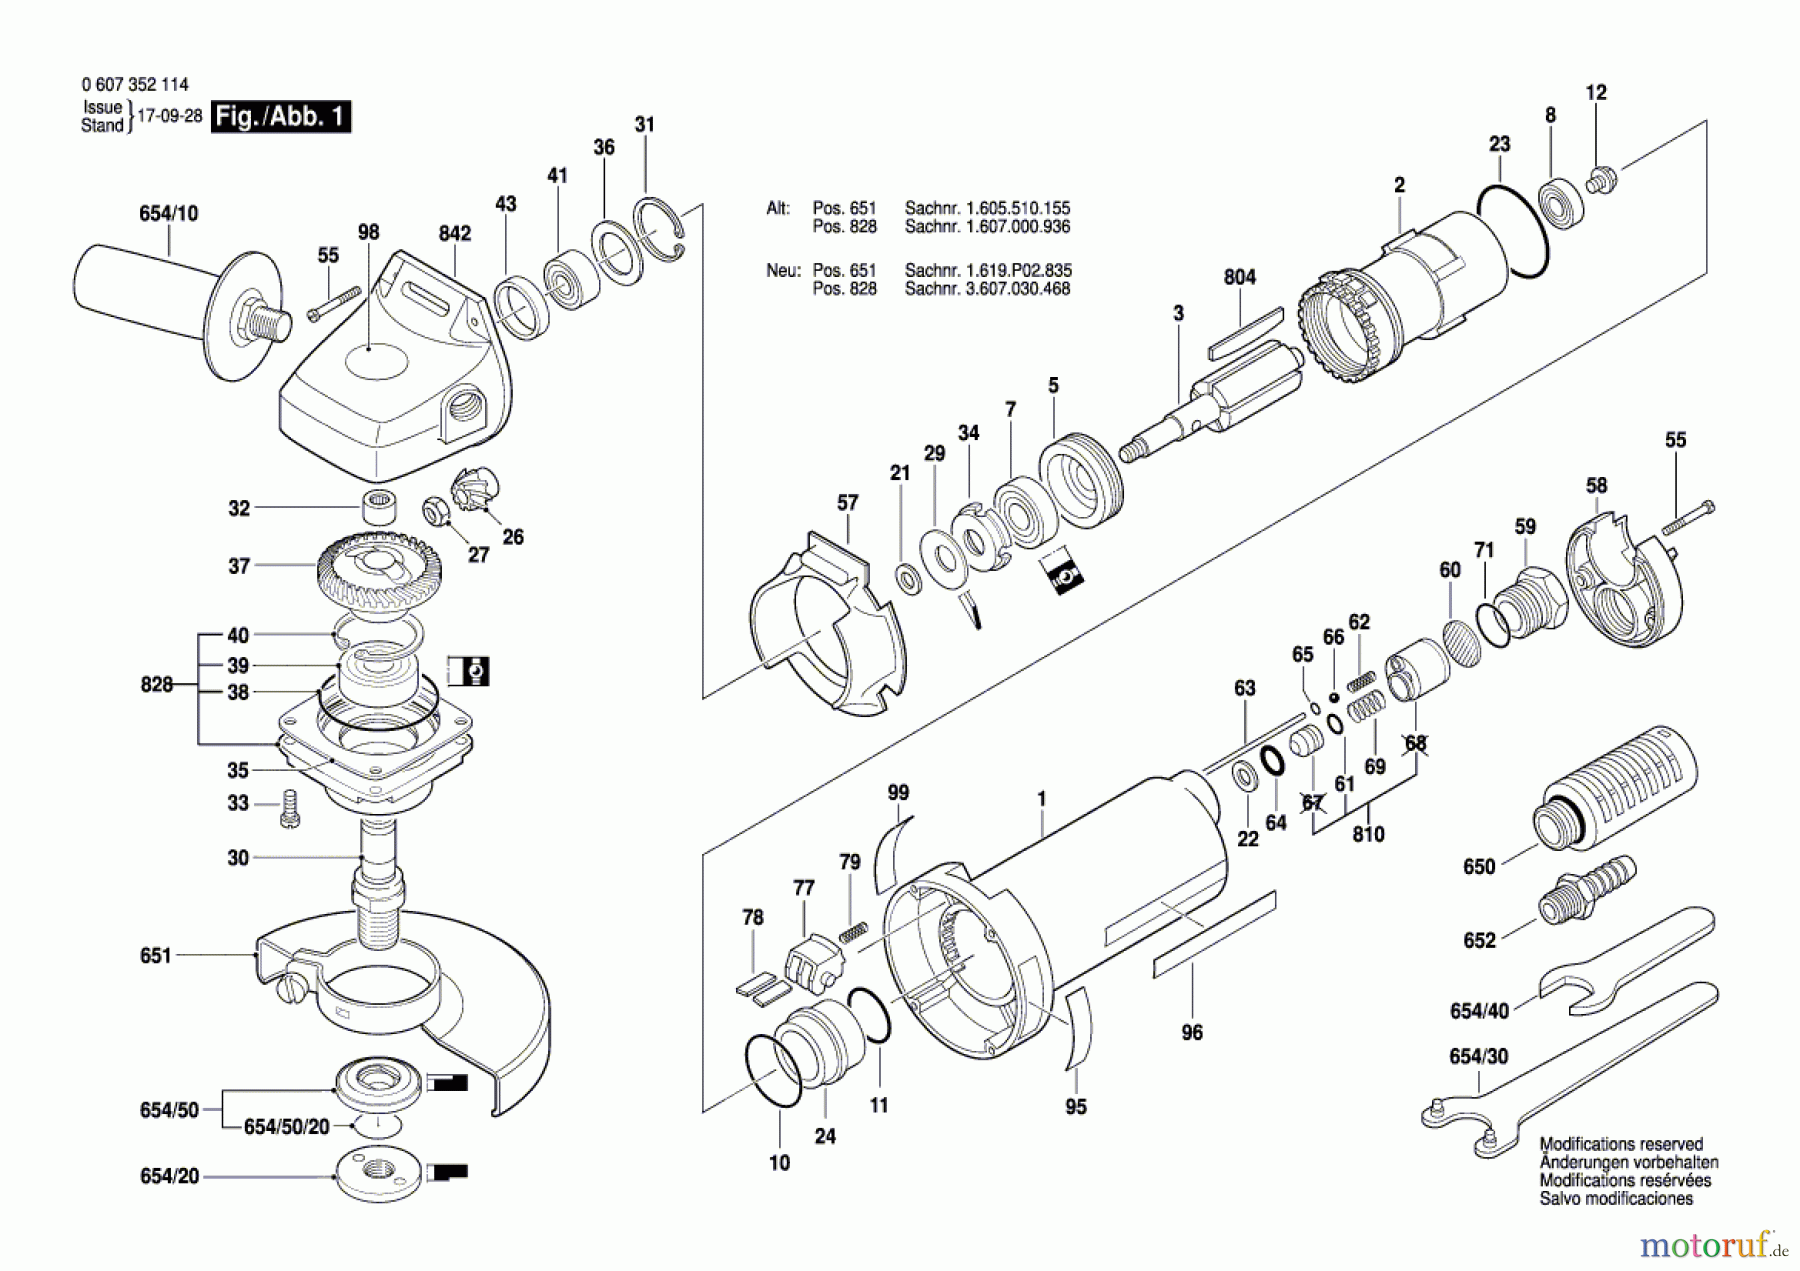  Bosch Werkzeug Winkelschleifer 550 WATT-SERIE Seite 1